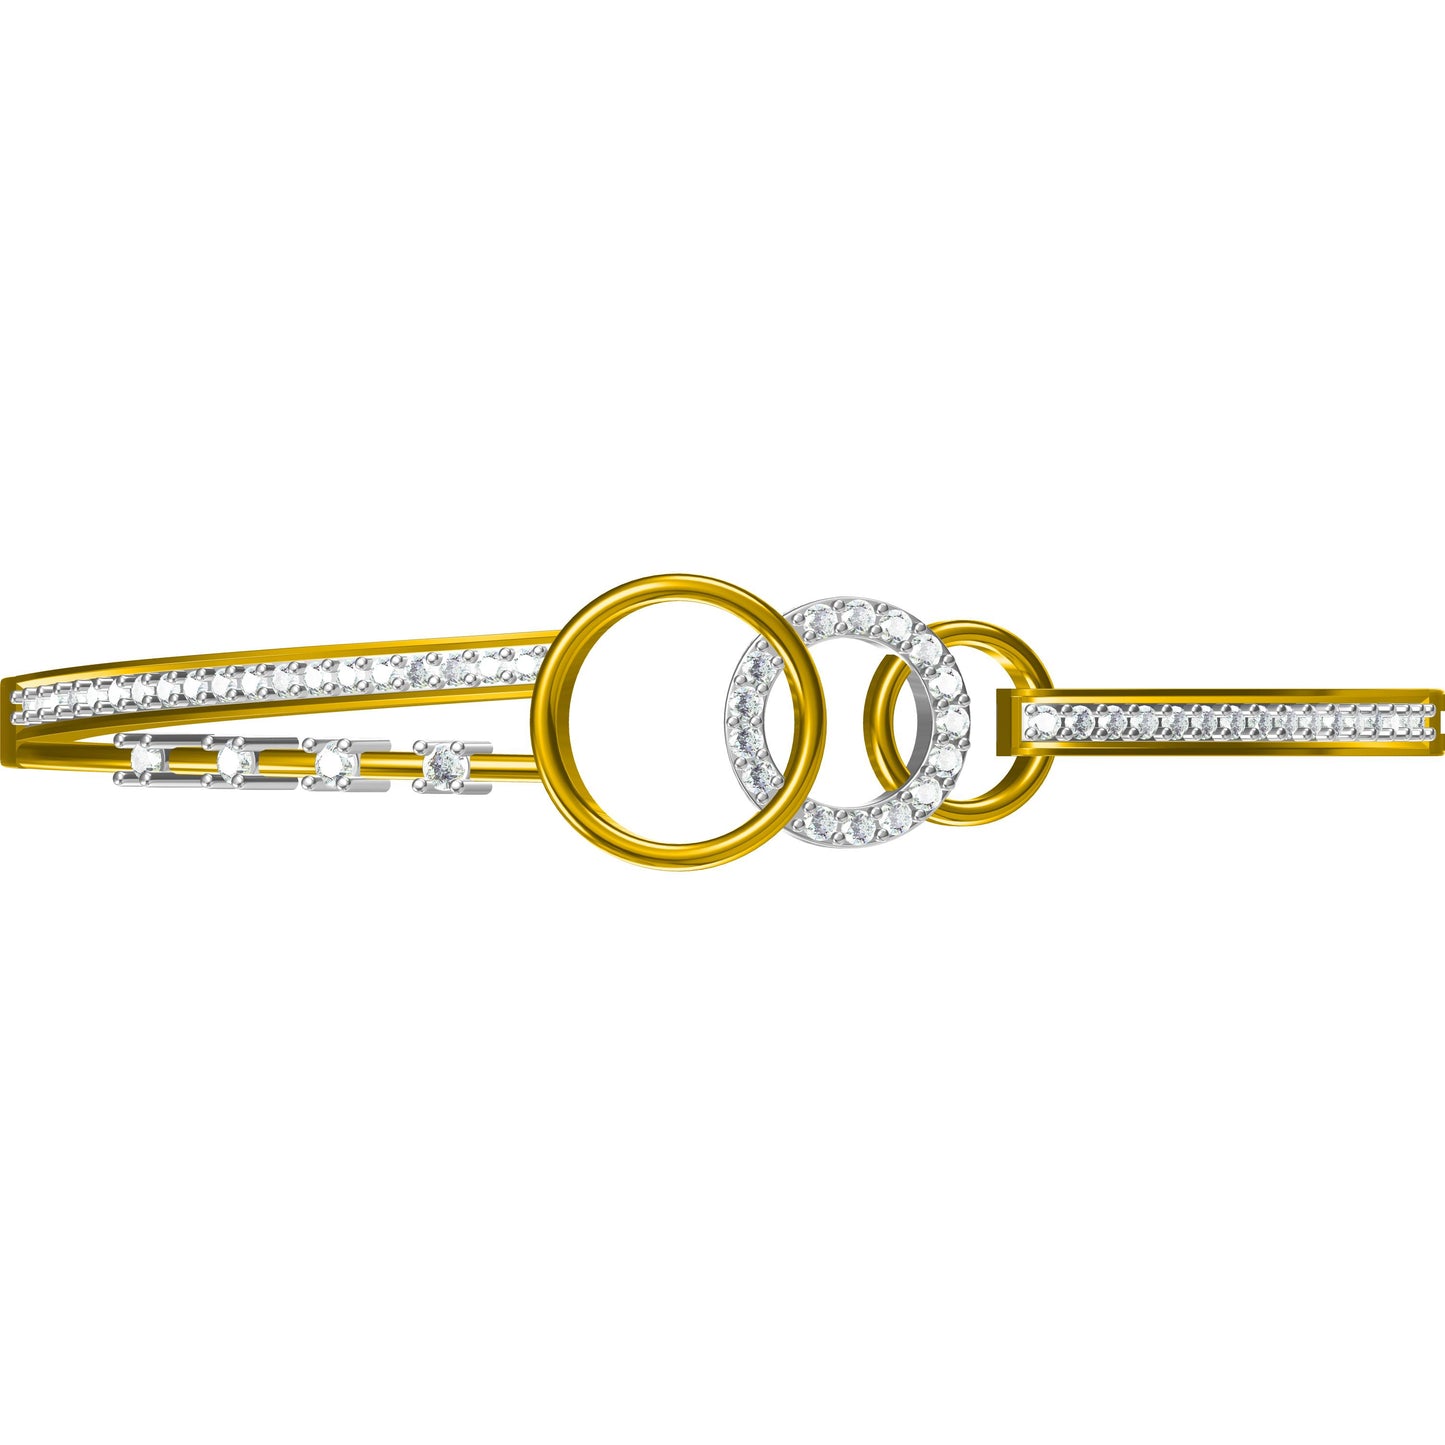 3D Jewelry Files Bracelet Model JCAD LBR-057-1057